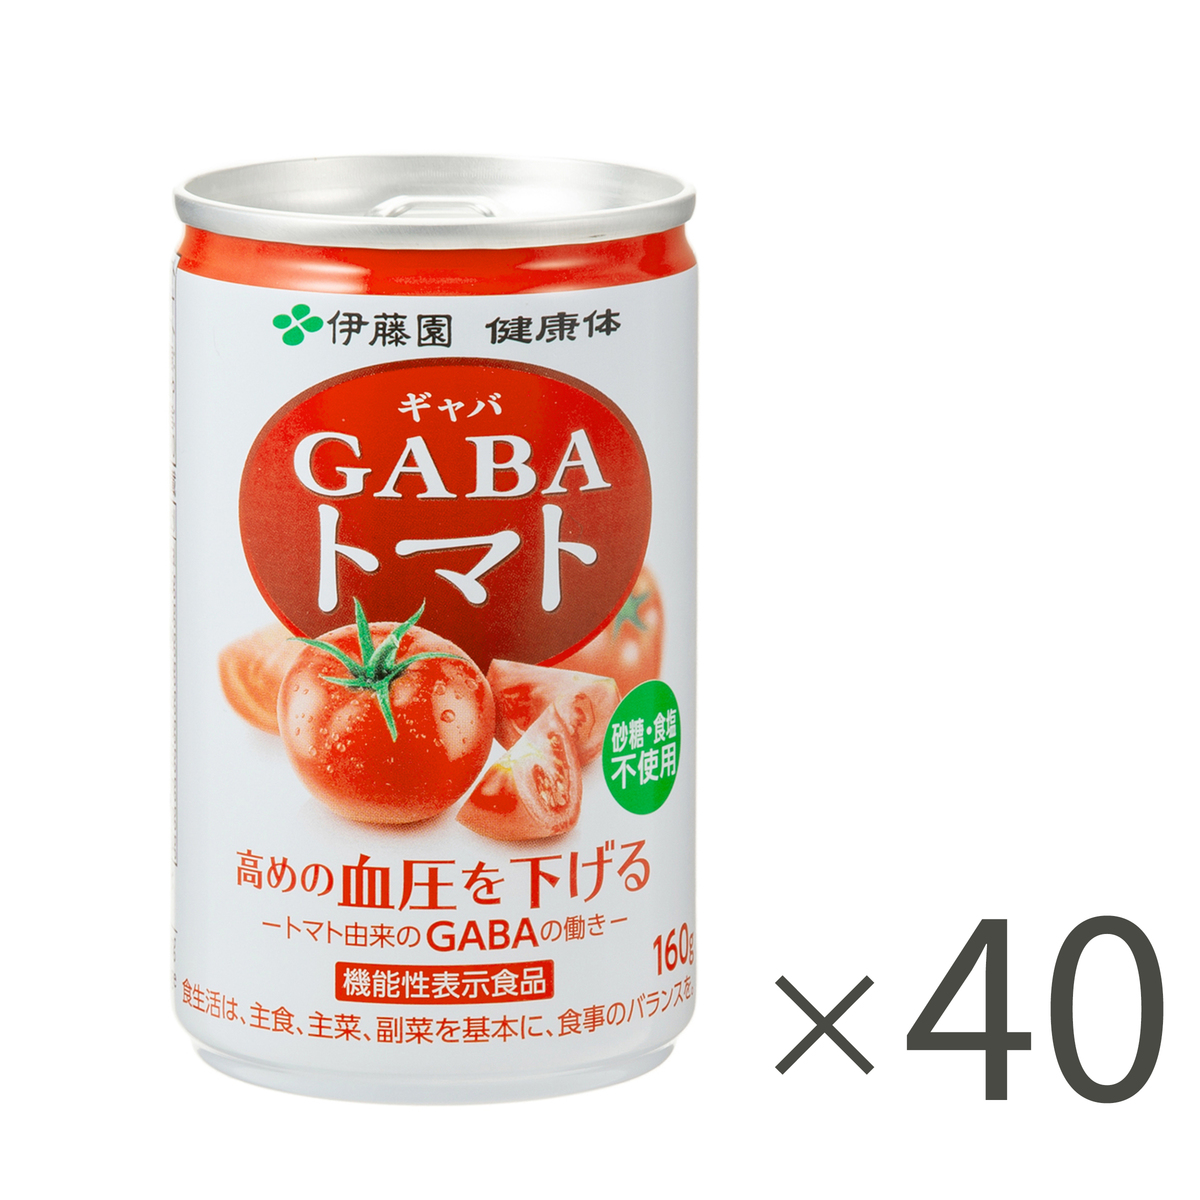 伊藤園「健康体」GABAトマト160g×40本